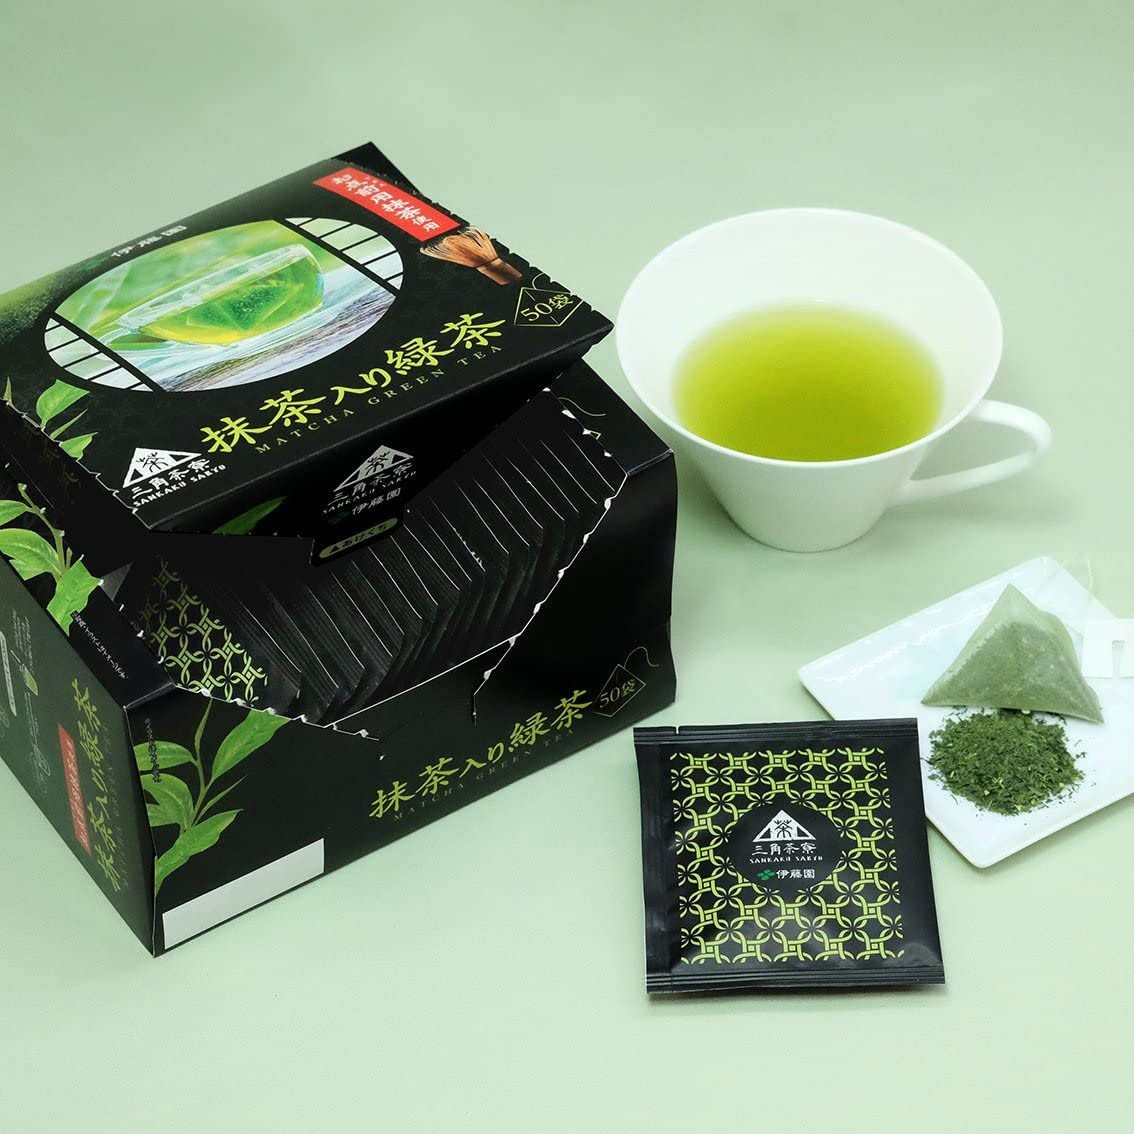 Tè matcha, l'incredibile tè verde giapponese: benefici e usi